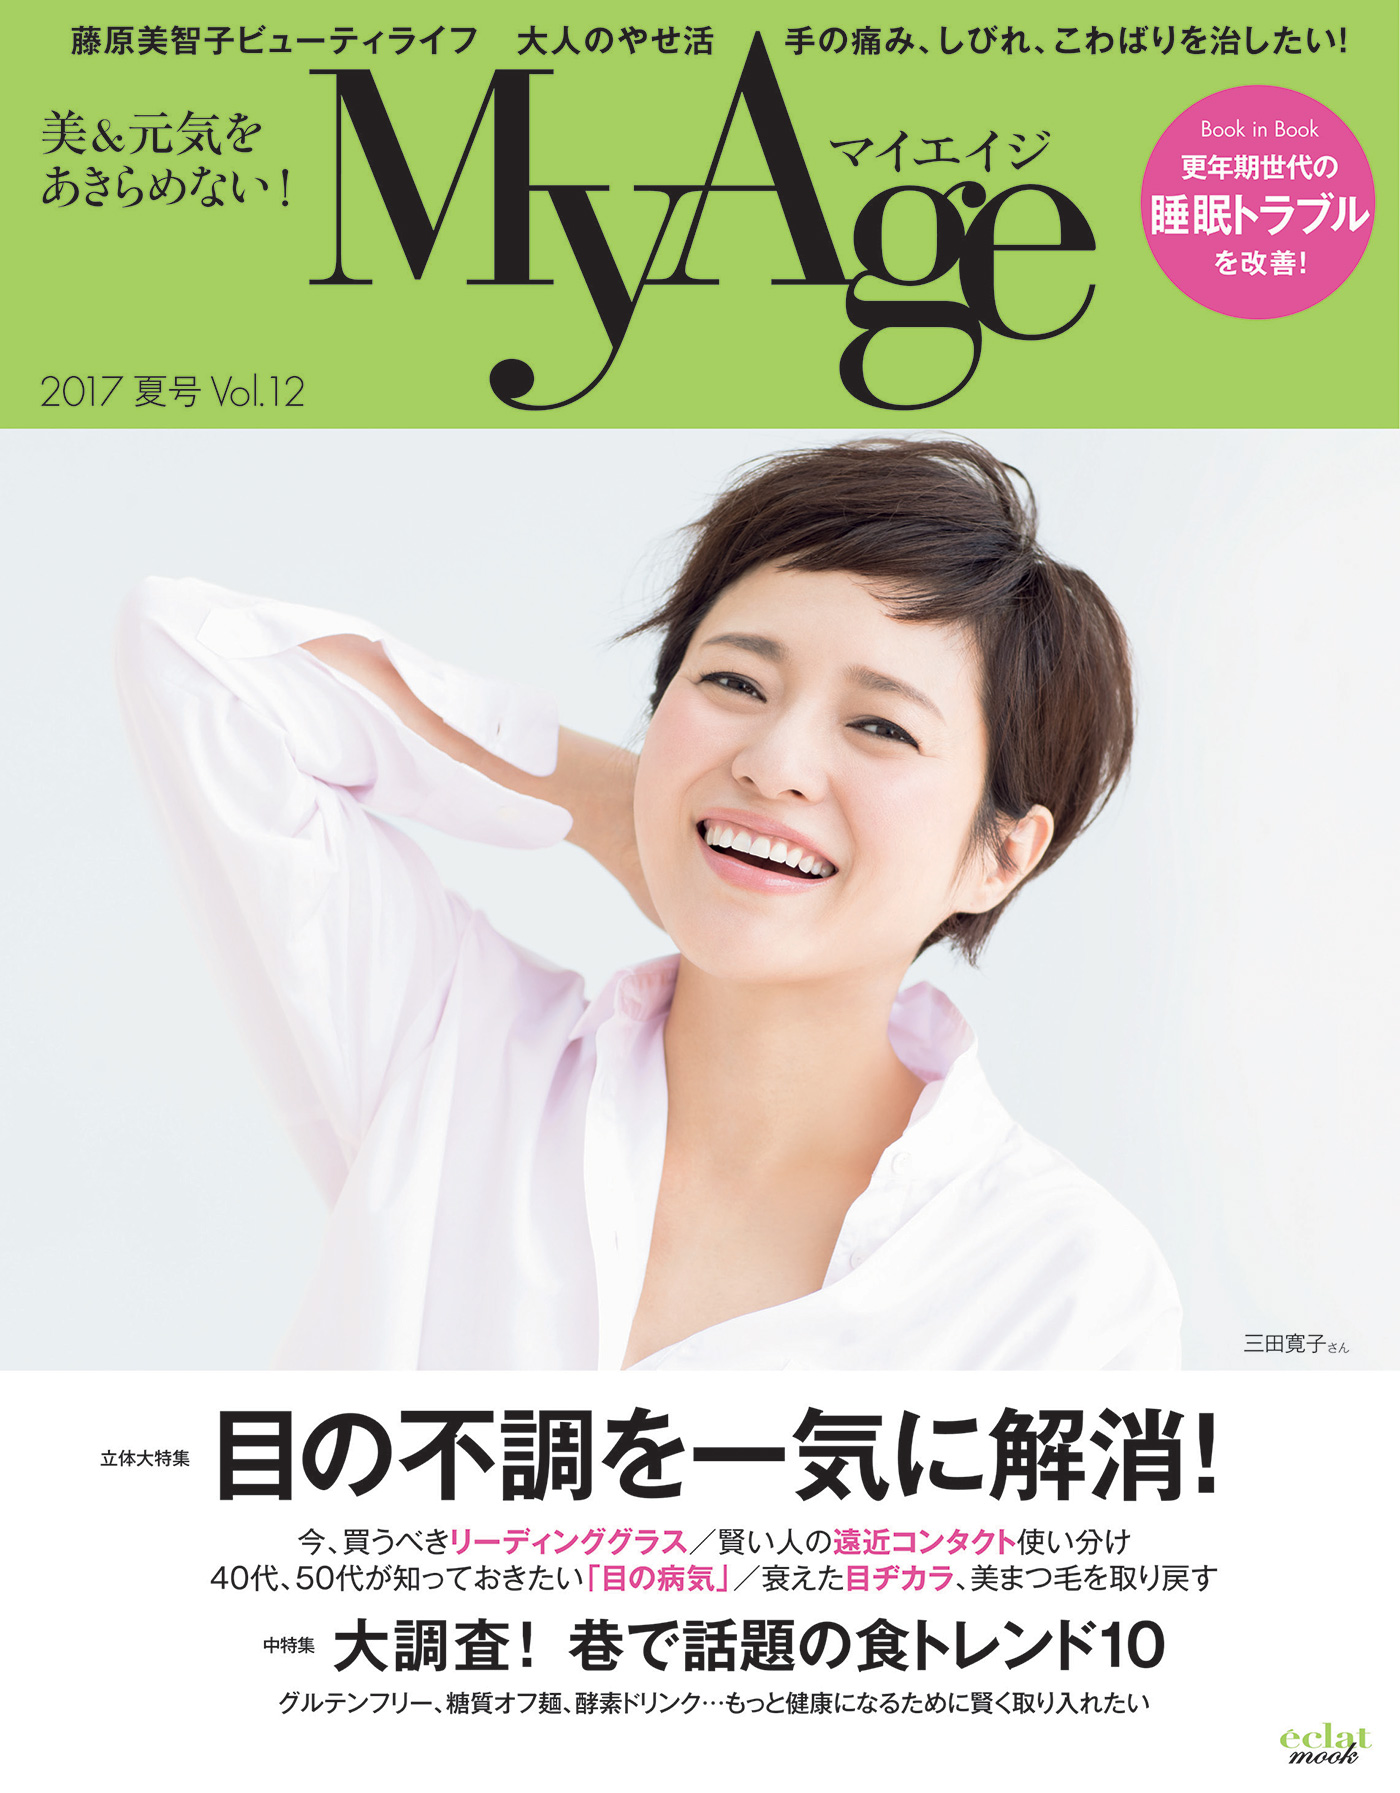 集英社 MyAge 2017 夏号 Vol.12